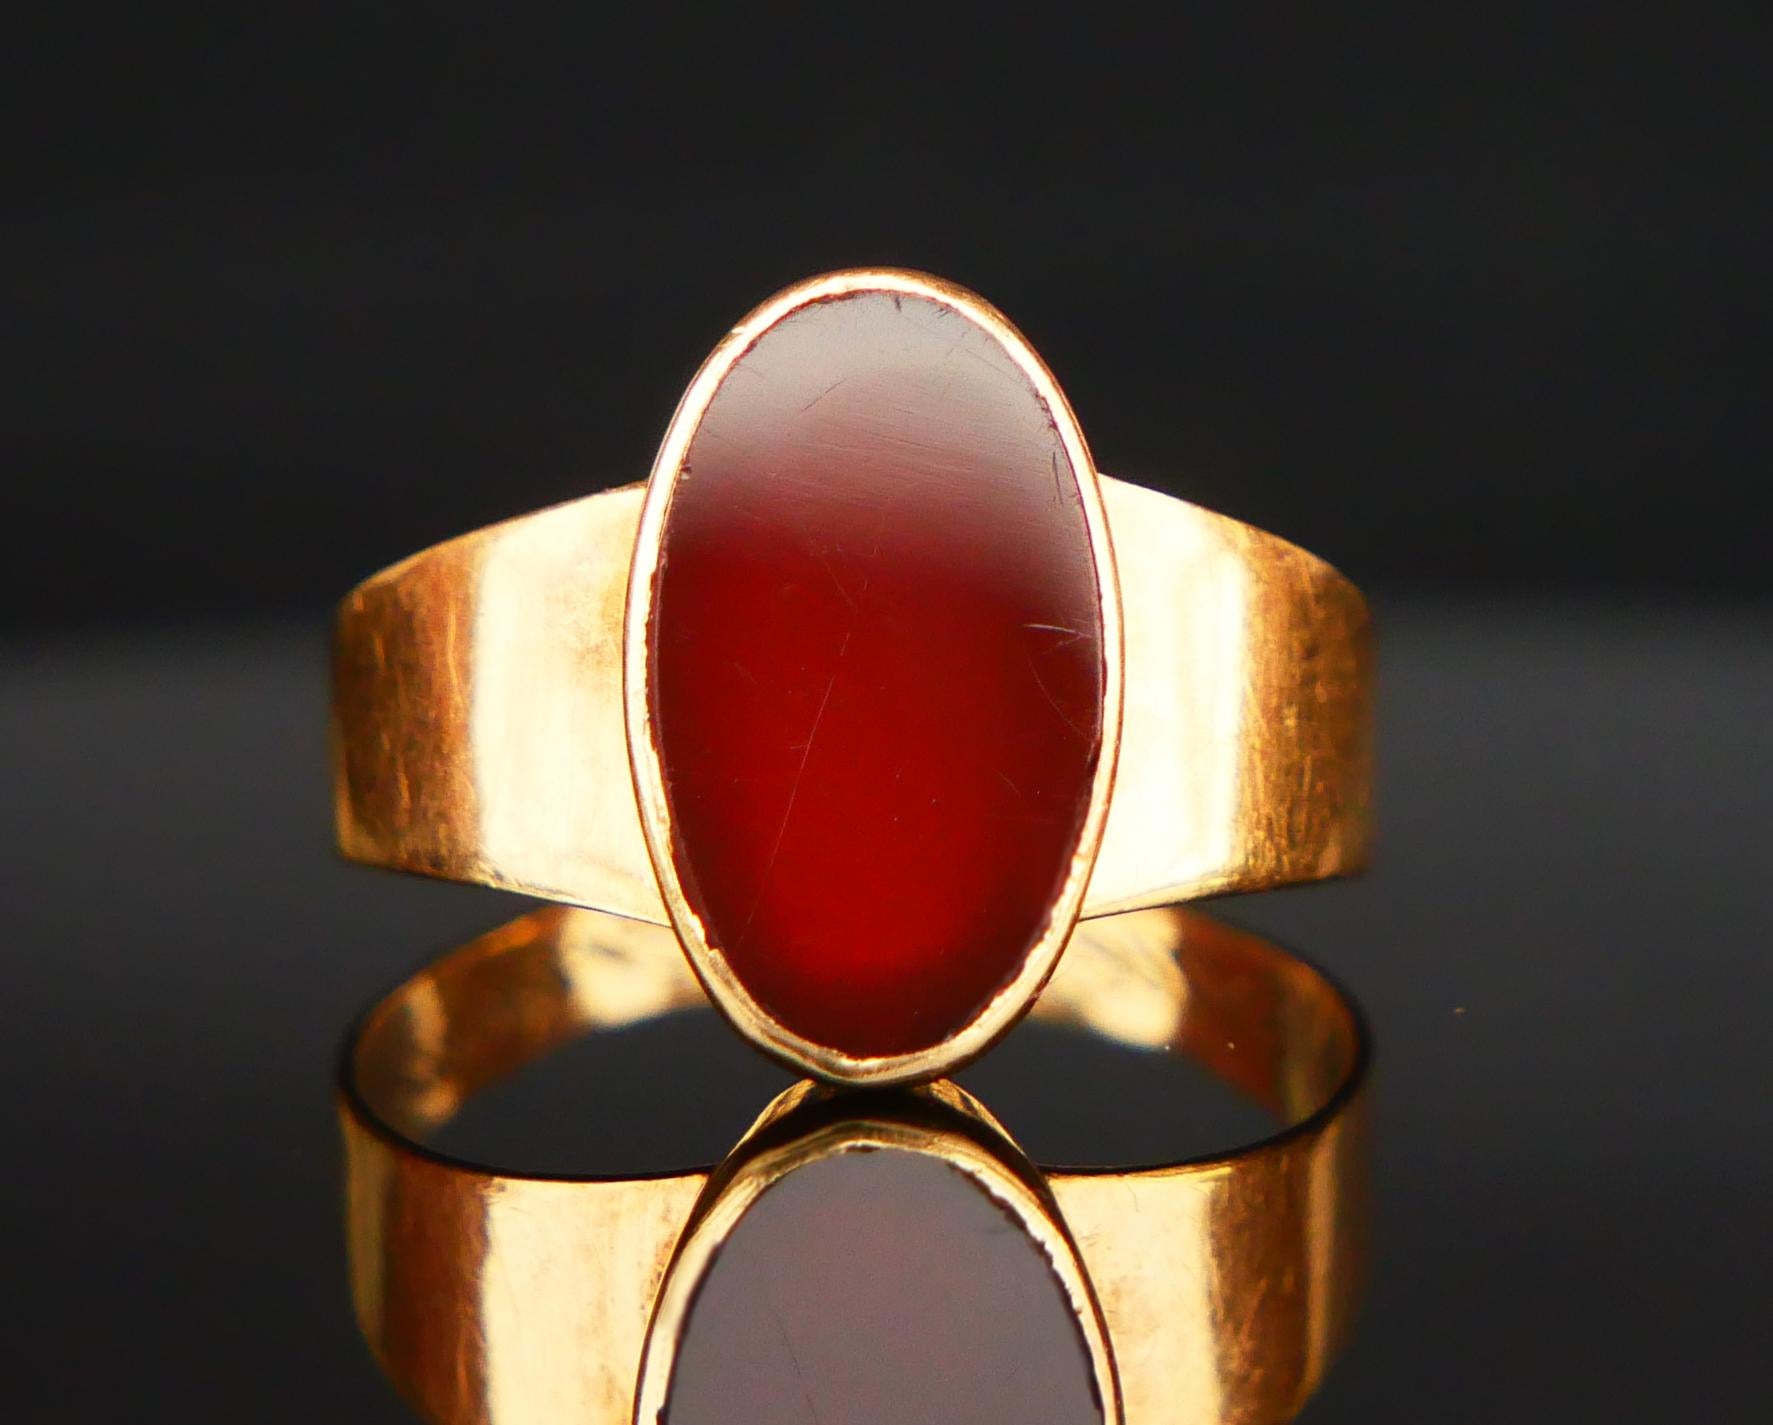 ϟignet Ring für Männer oder Frauen mit schlichtem breitem Band aus massivem 18K Gelbgold, verziert mit einer polierten Platte aus natürlichem roten Onyx 12 mm x 7mm x 2,5 mm tief / ca 3,5 ct.

Die Oberfläche des Steins ist glatt poliert, die